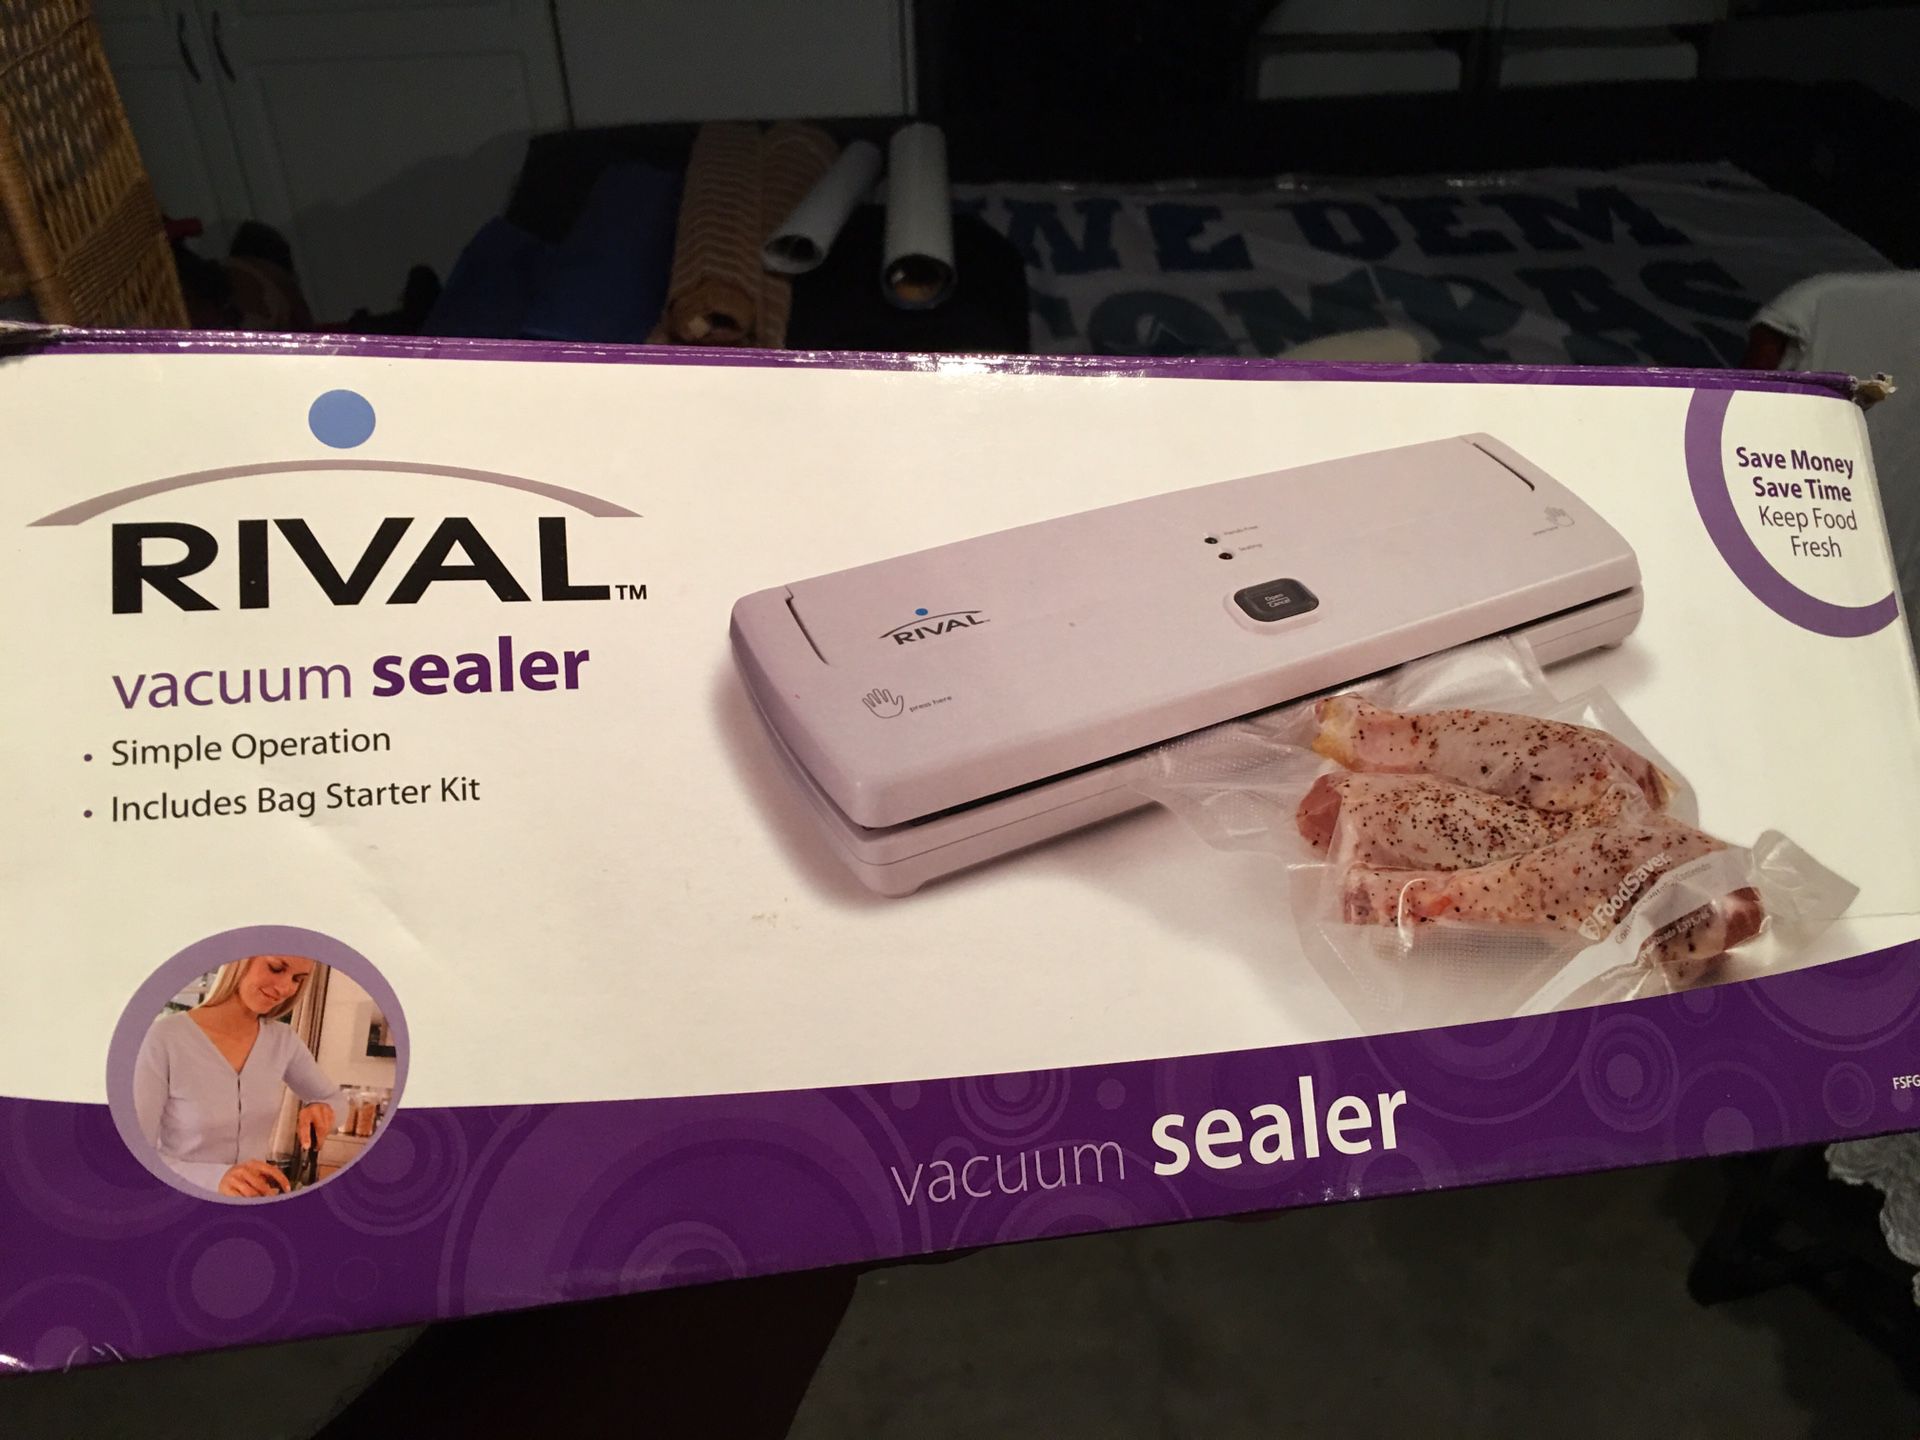 Vacuum sealer